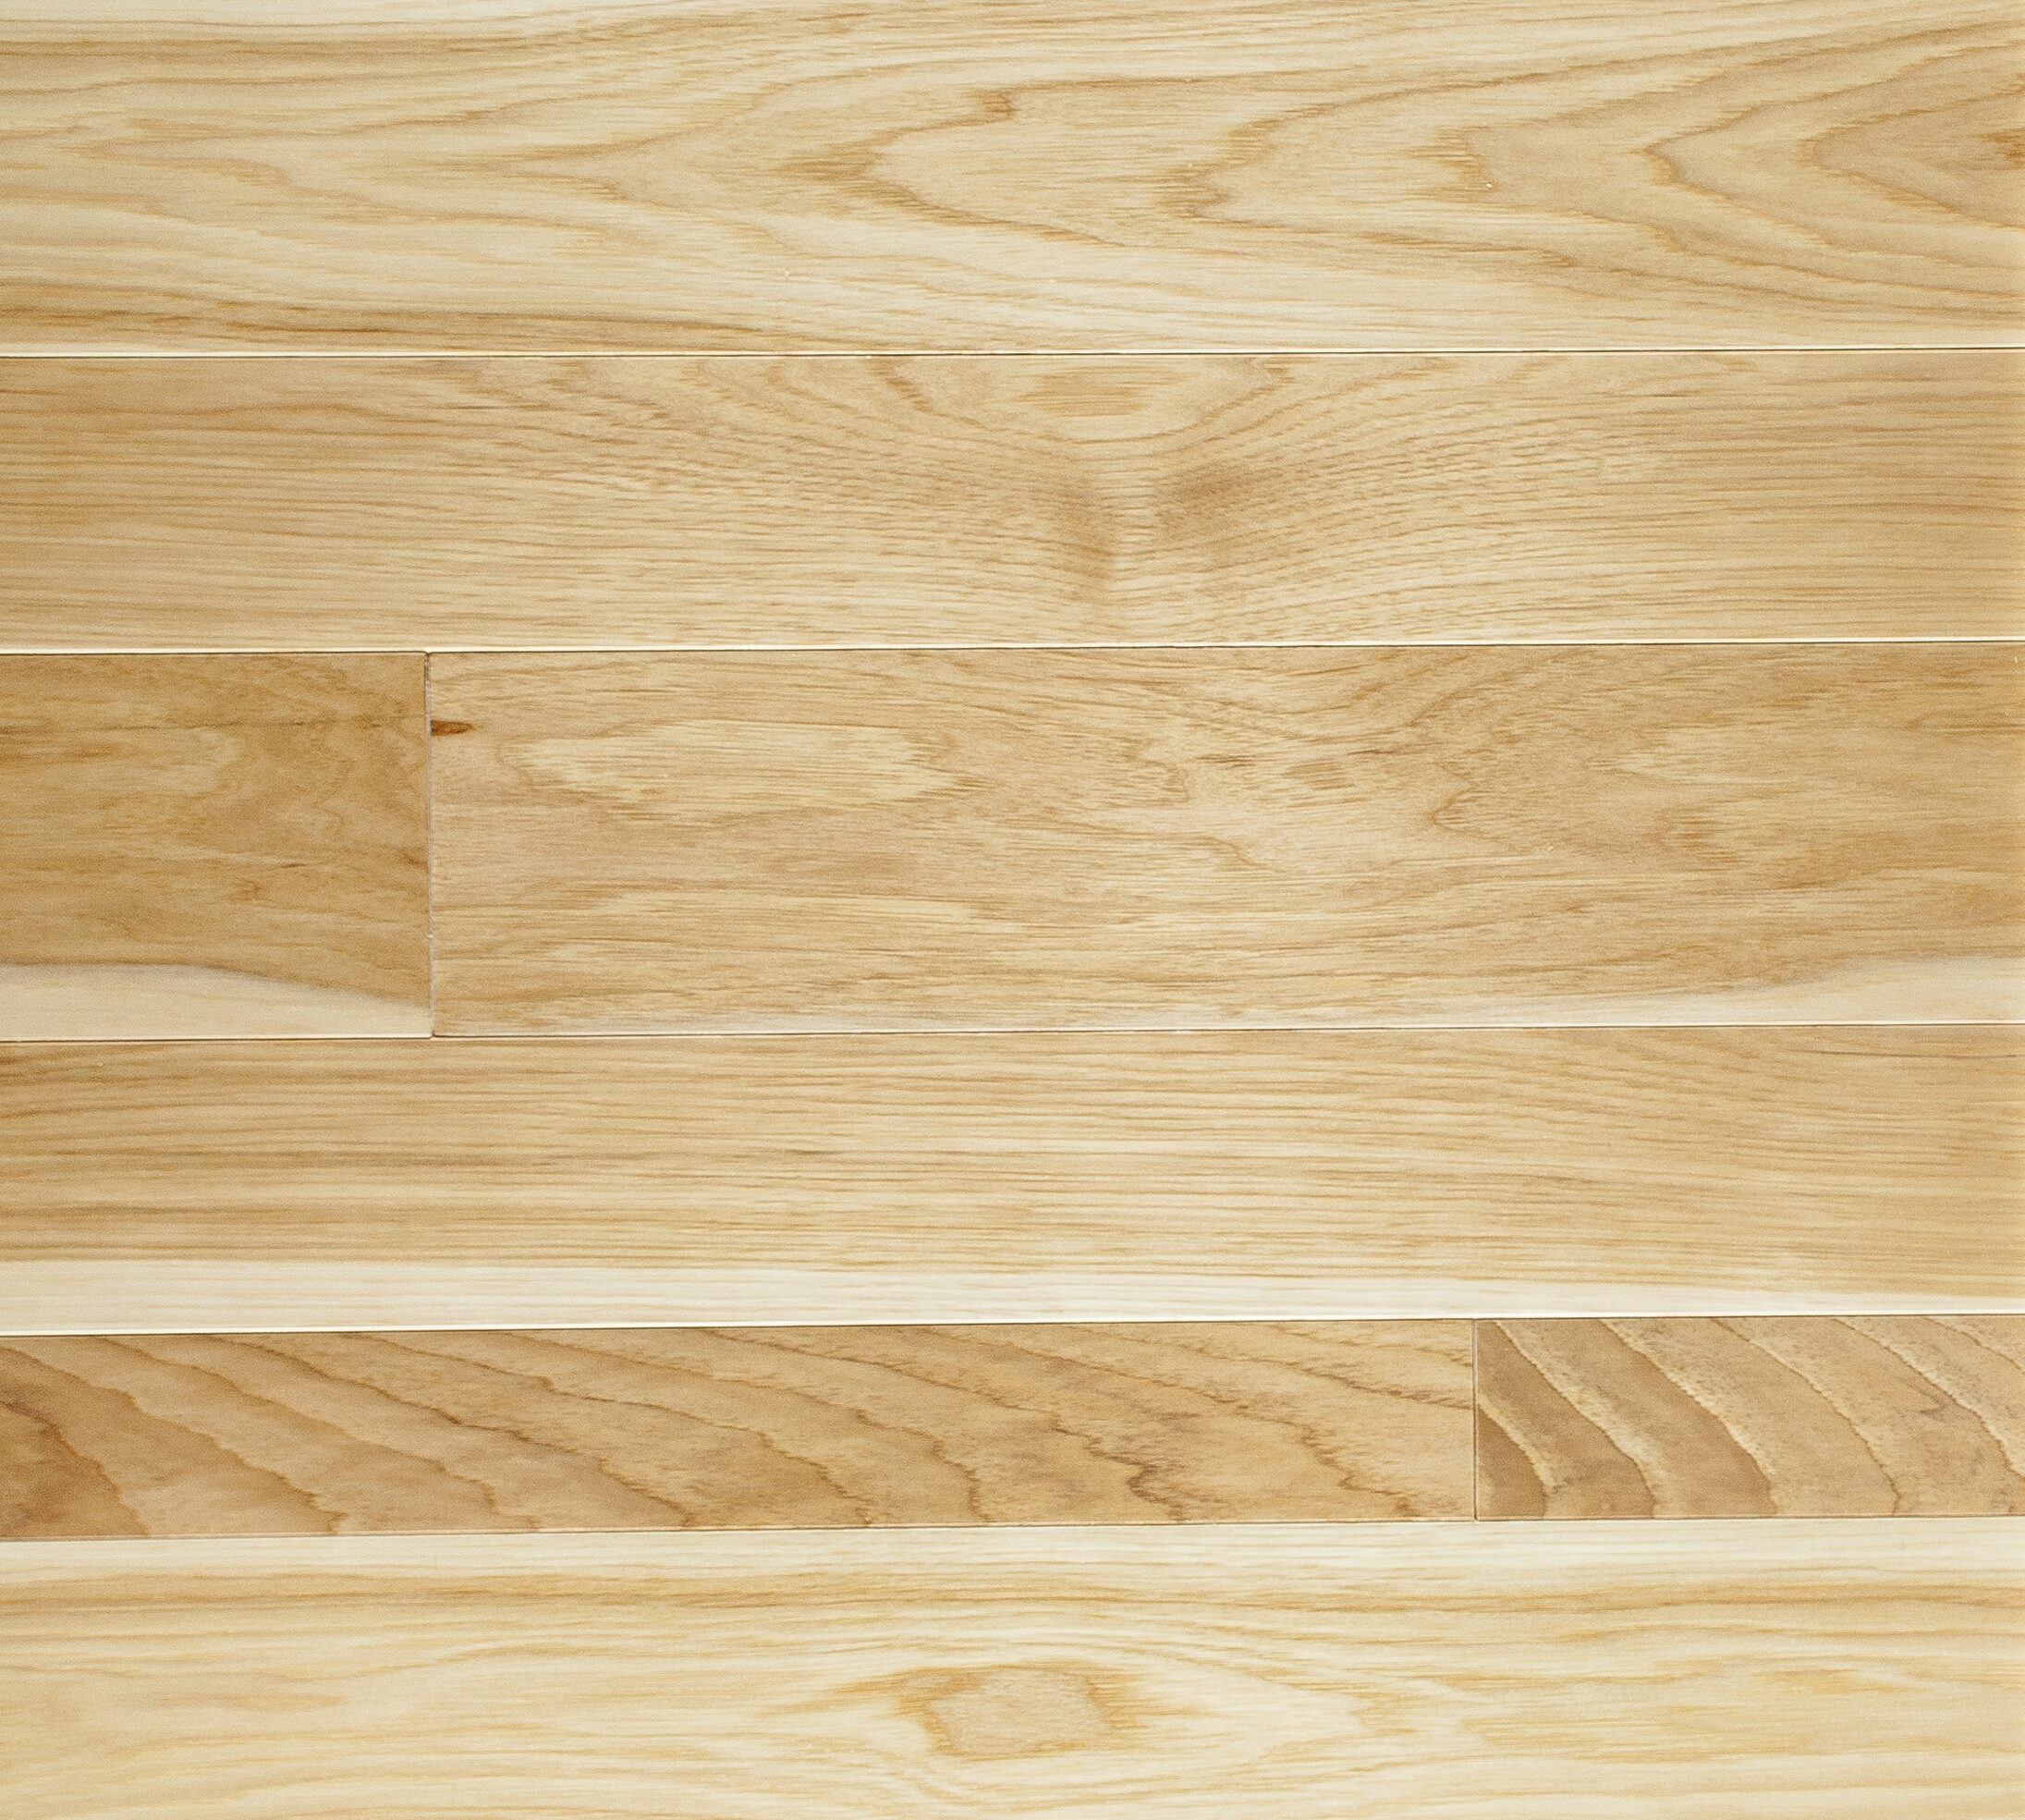 Prefinished Hickory Flooring Sheoga Hardwood